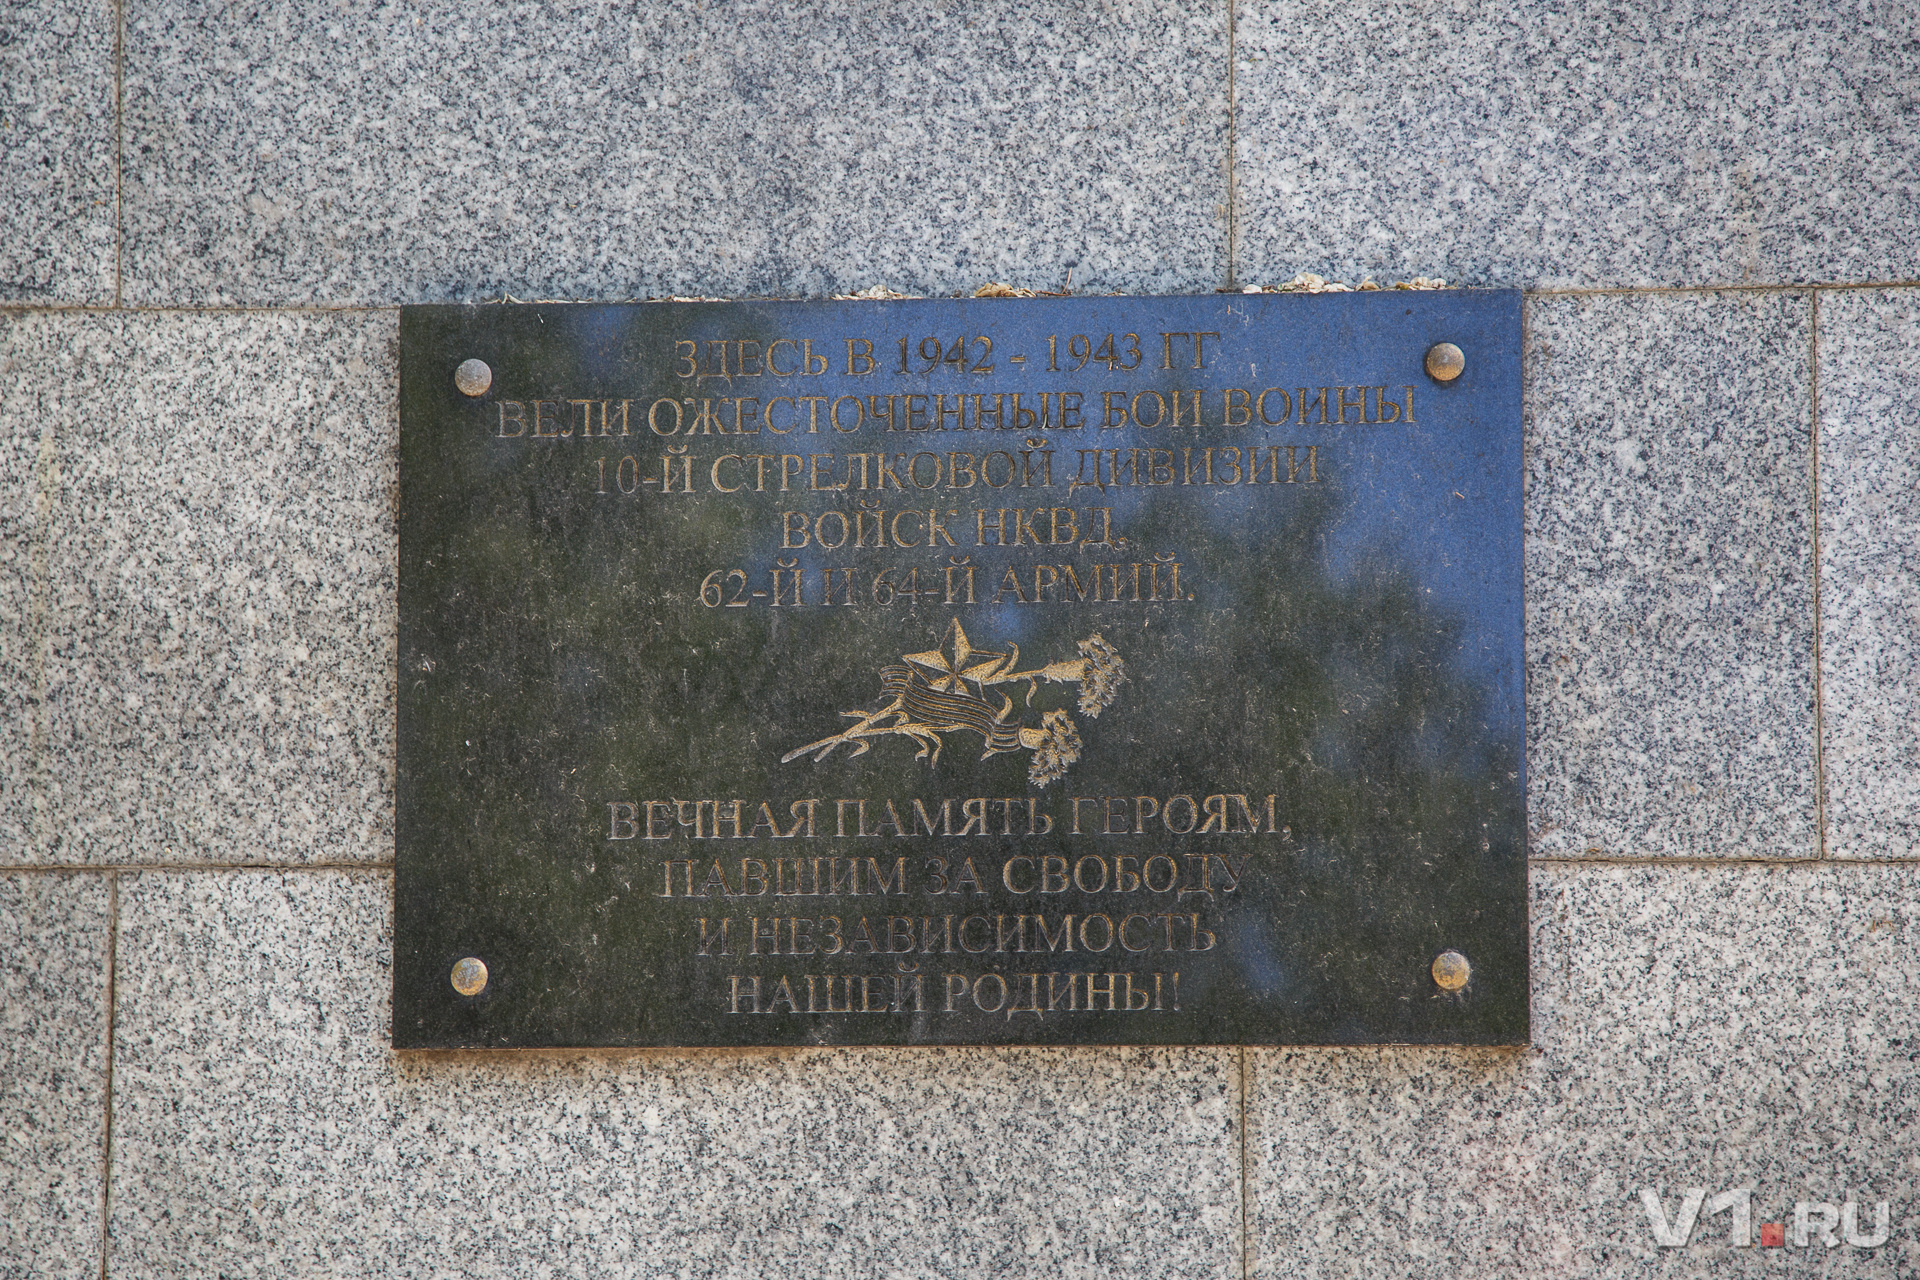 Вместе с 62 и 64-й армиями здесь сражалась героическая 10-я дивизия НКВД